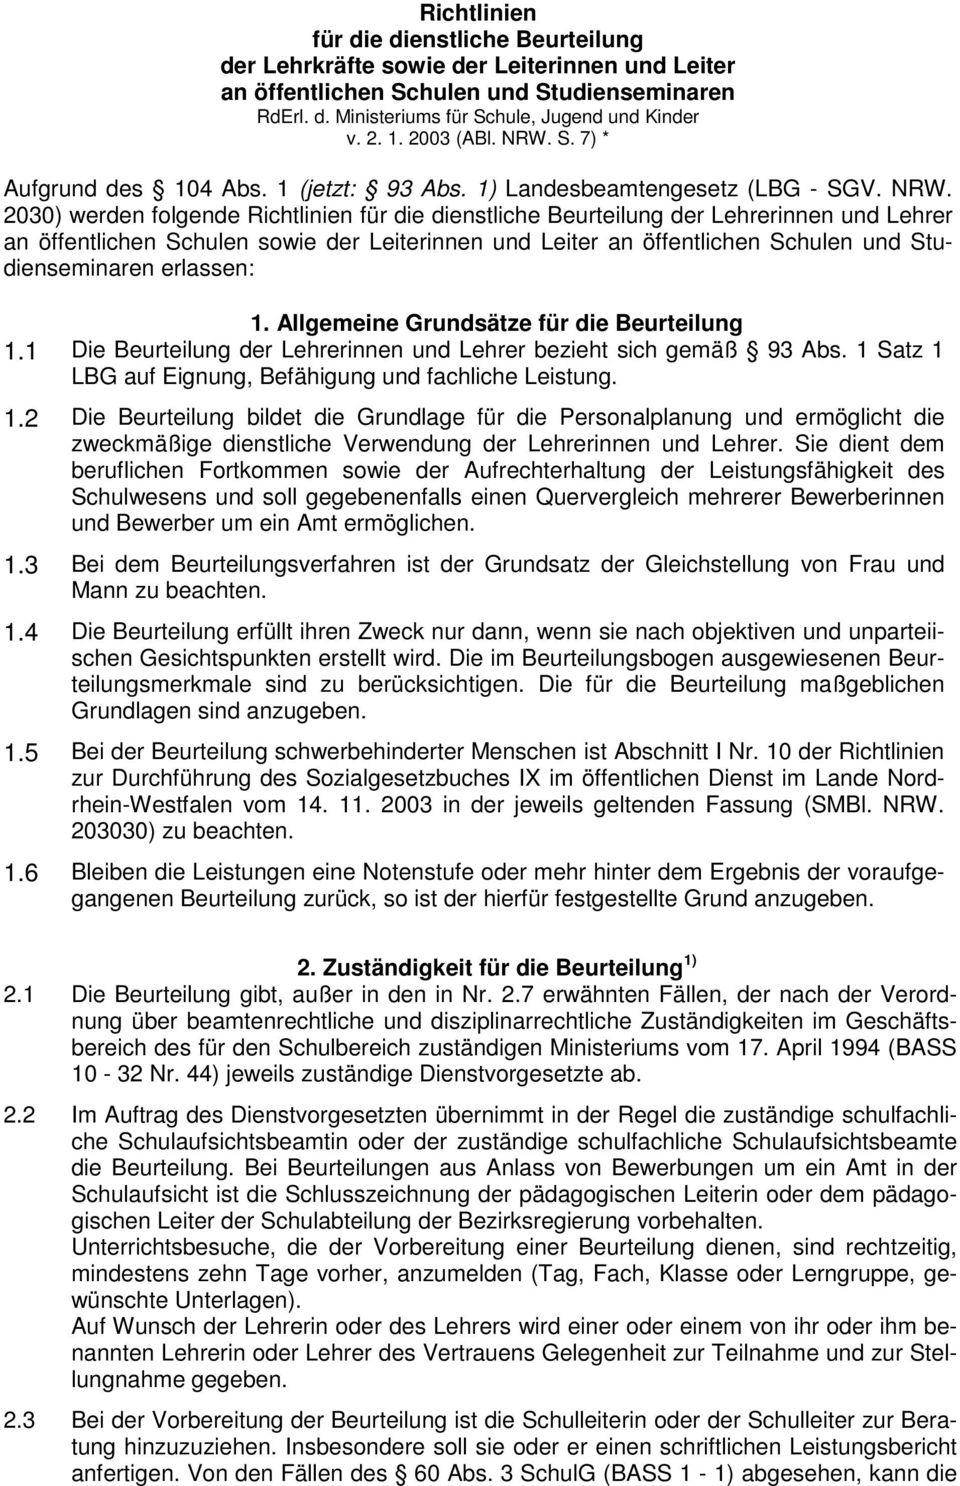 S. 7) * Aufgrund des 104 Abs. 1 (jetzt: 93 Abs. 1) Landesbeamtengesetz (LBG - SGV. NRW.